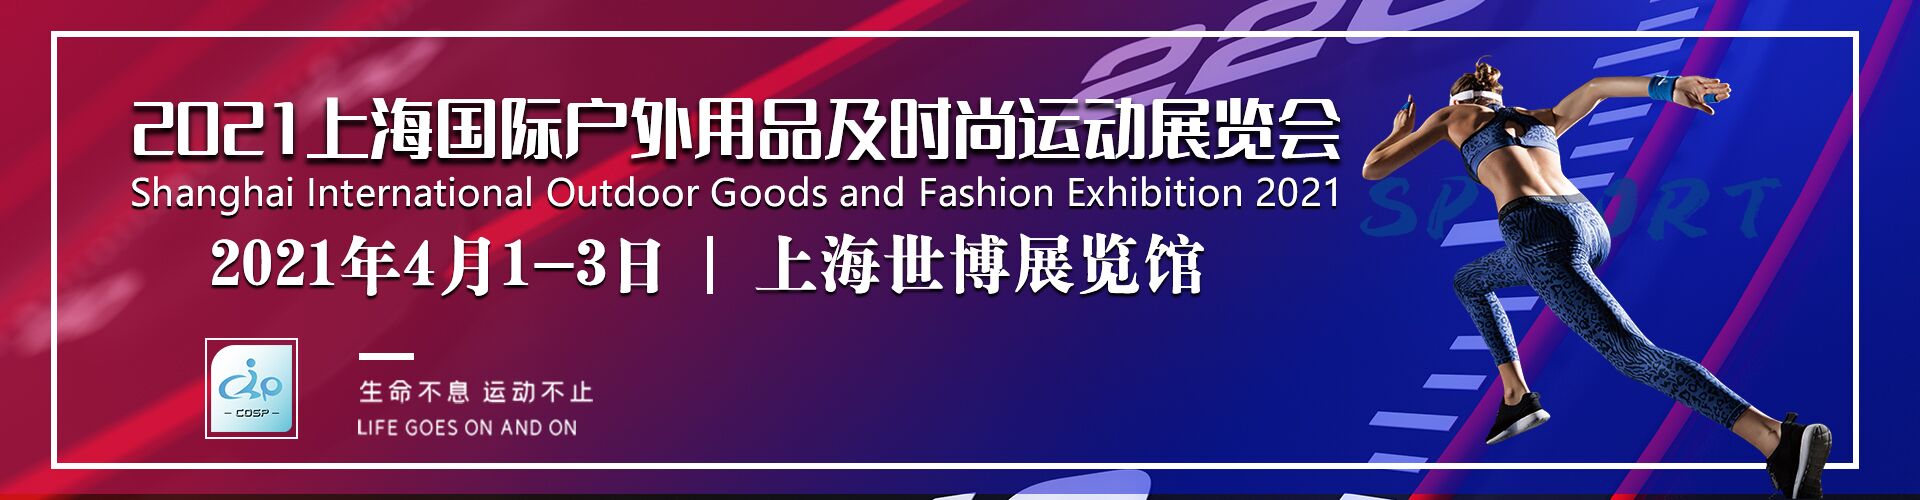 2021第十四届上海户外用品及时尚运动展览会